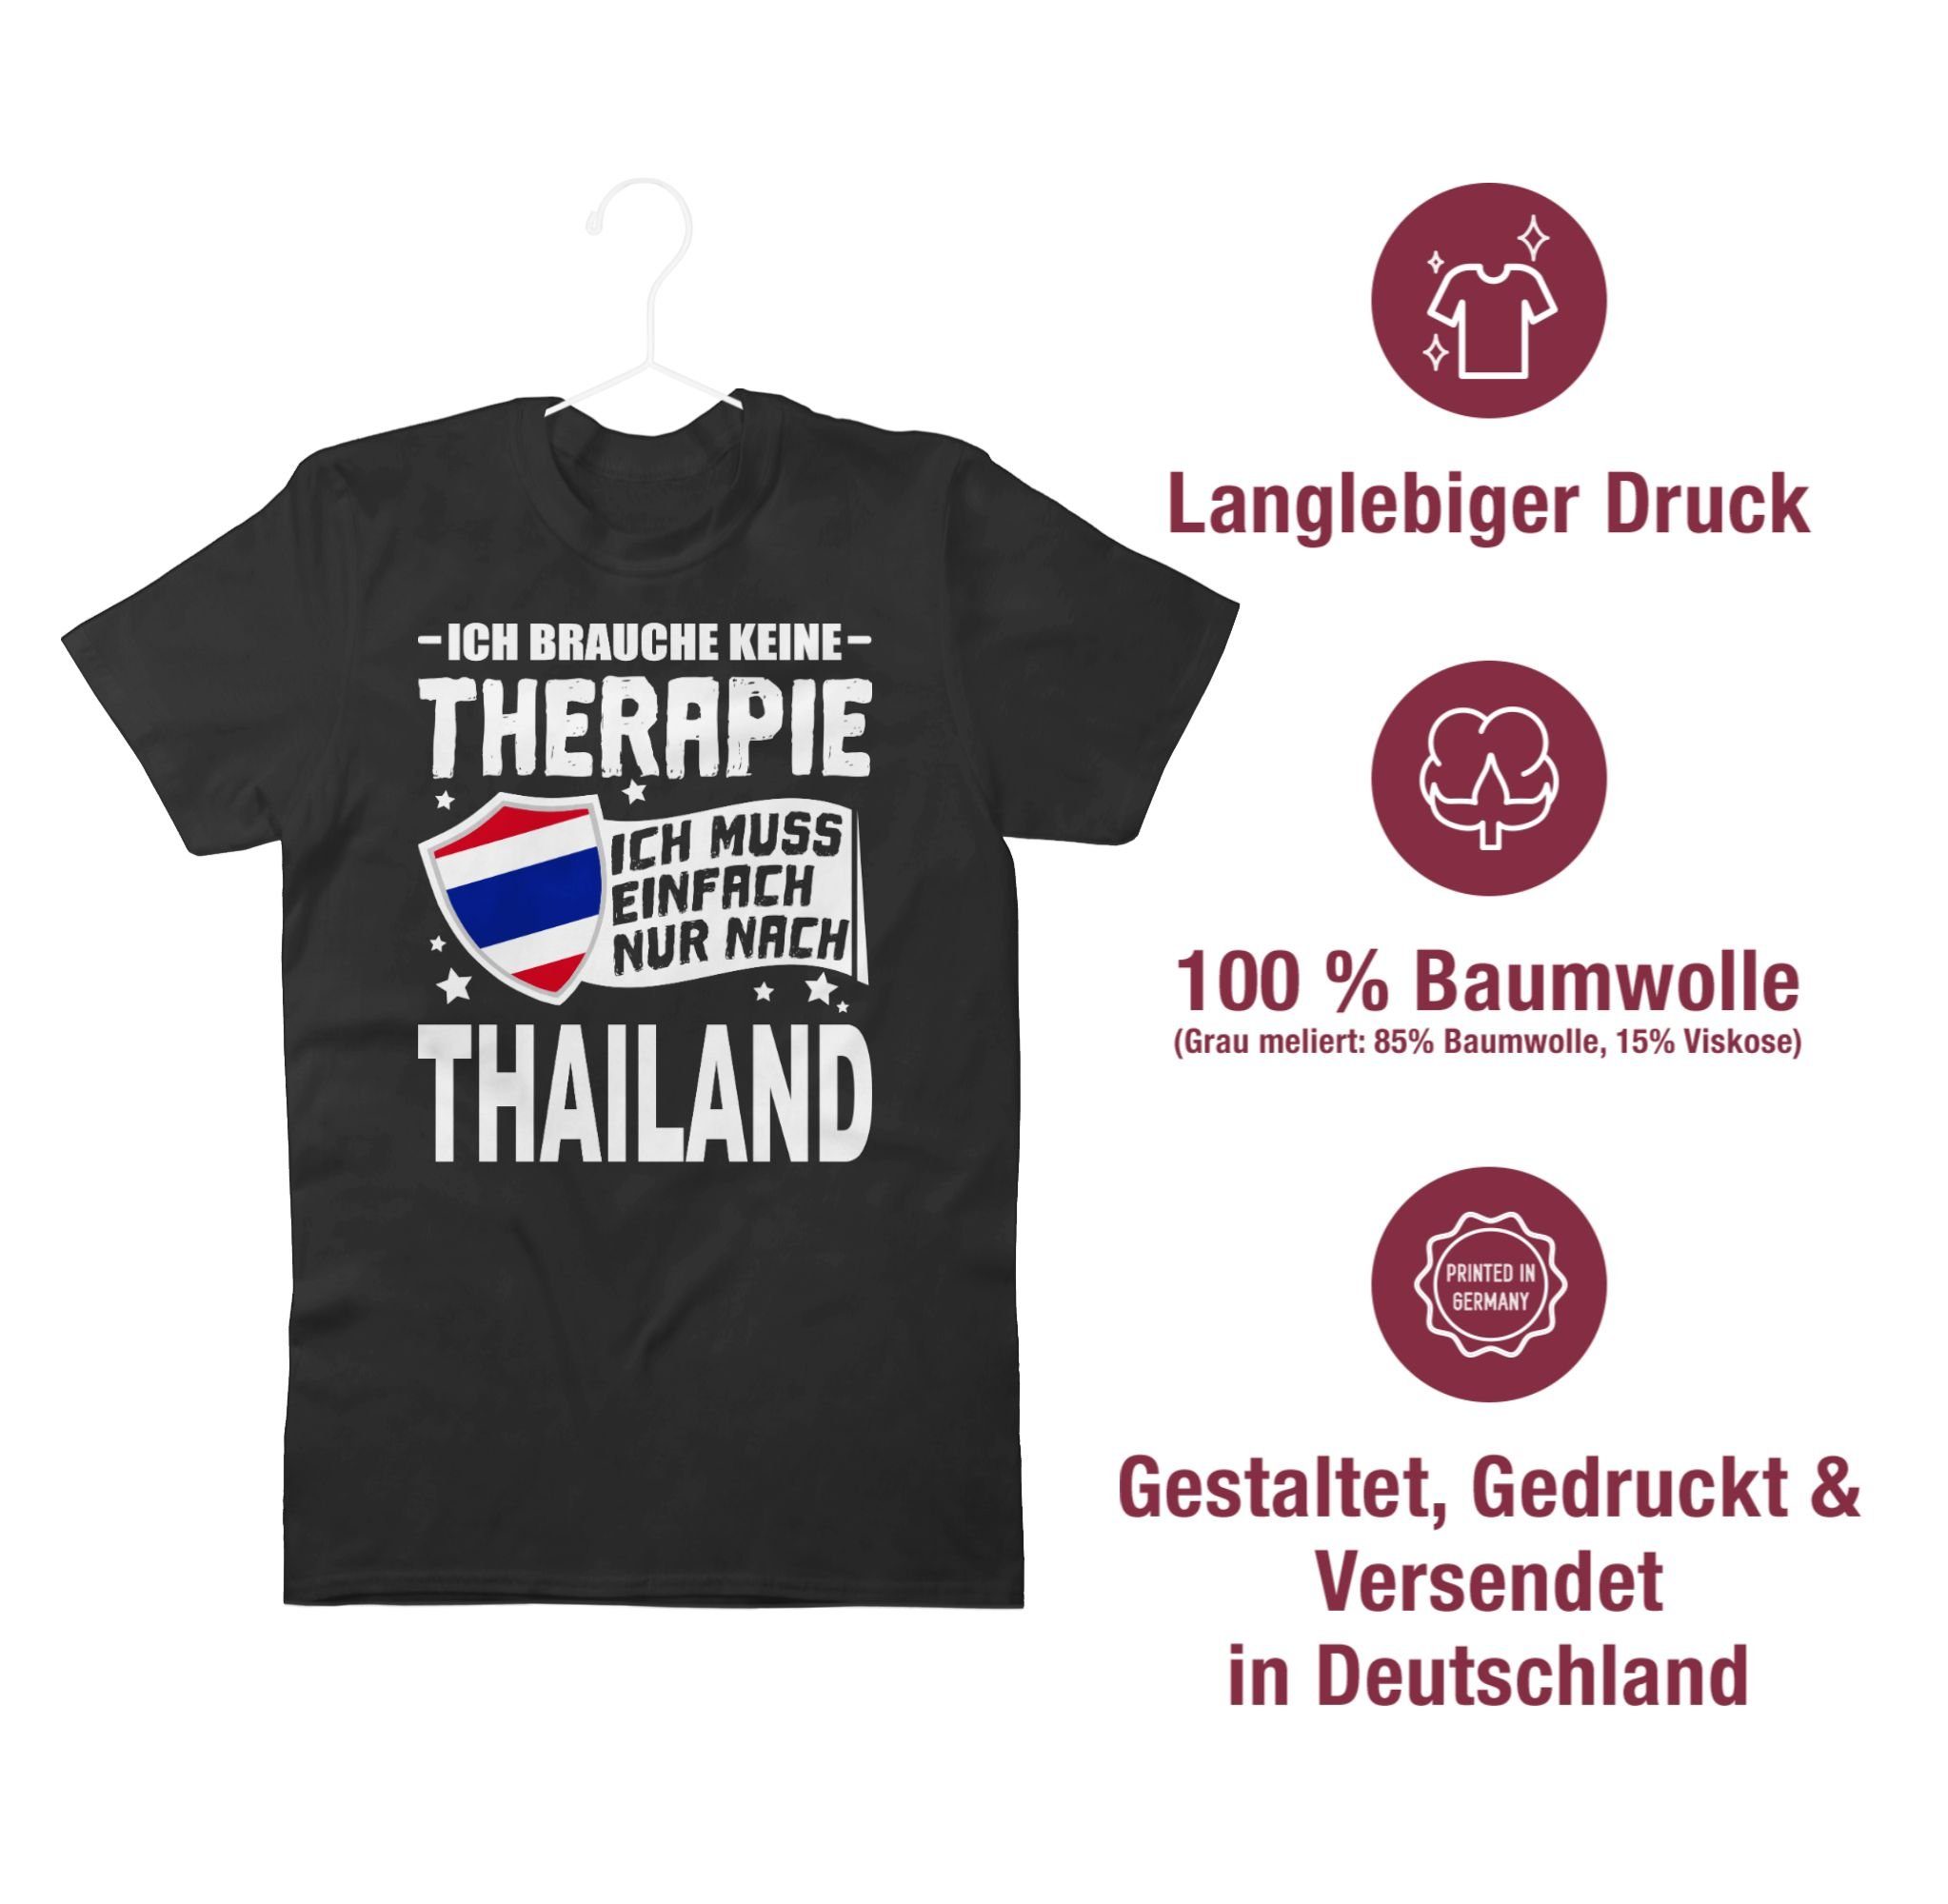 Shirtracer T-Shirt Ich weiß nur - Ich Schwarz Therapie nach brauche keine 01 Thailand Wappen einfach muss Länder